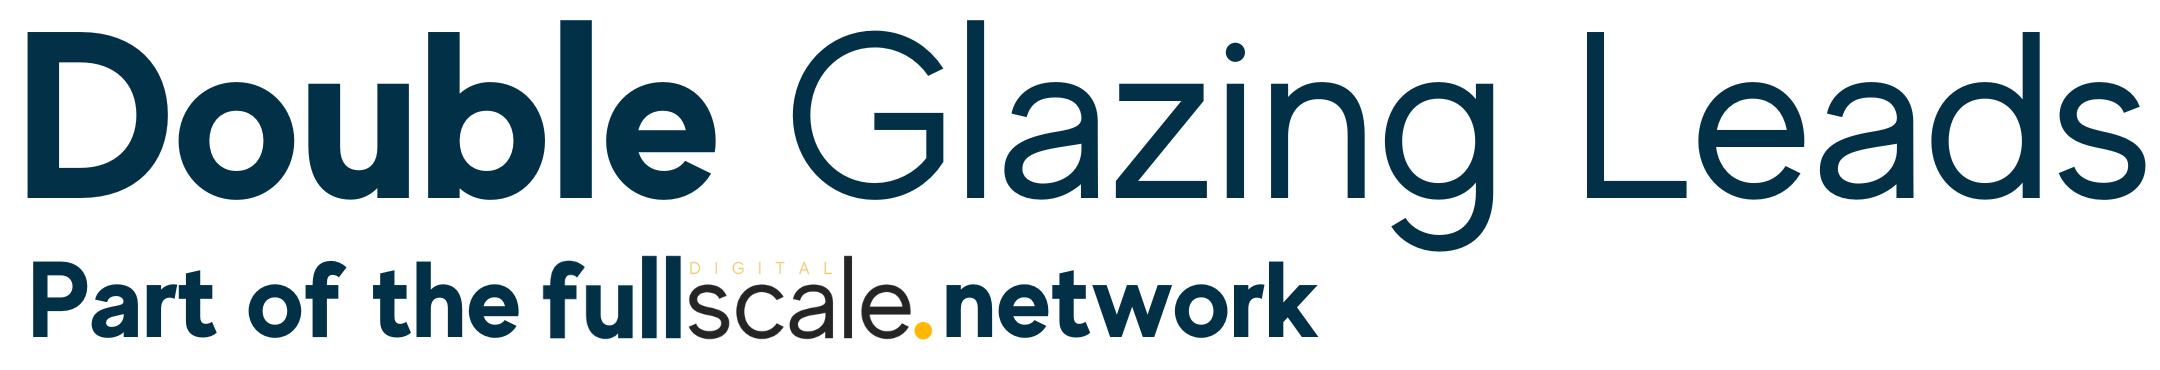 Double Glazing Leads Logo